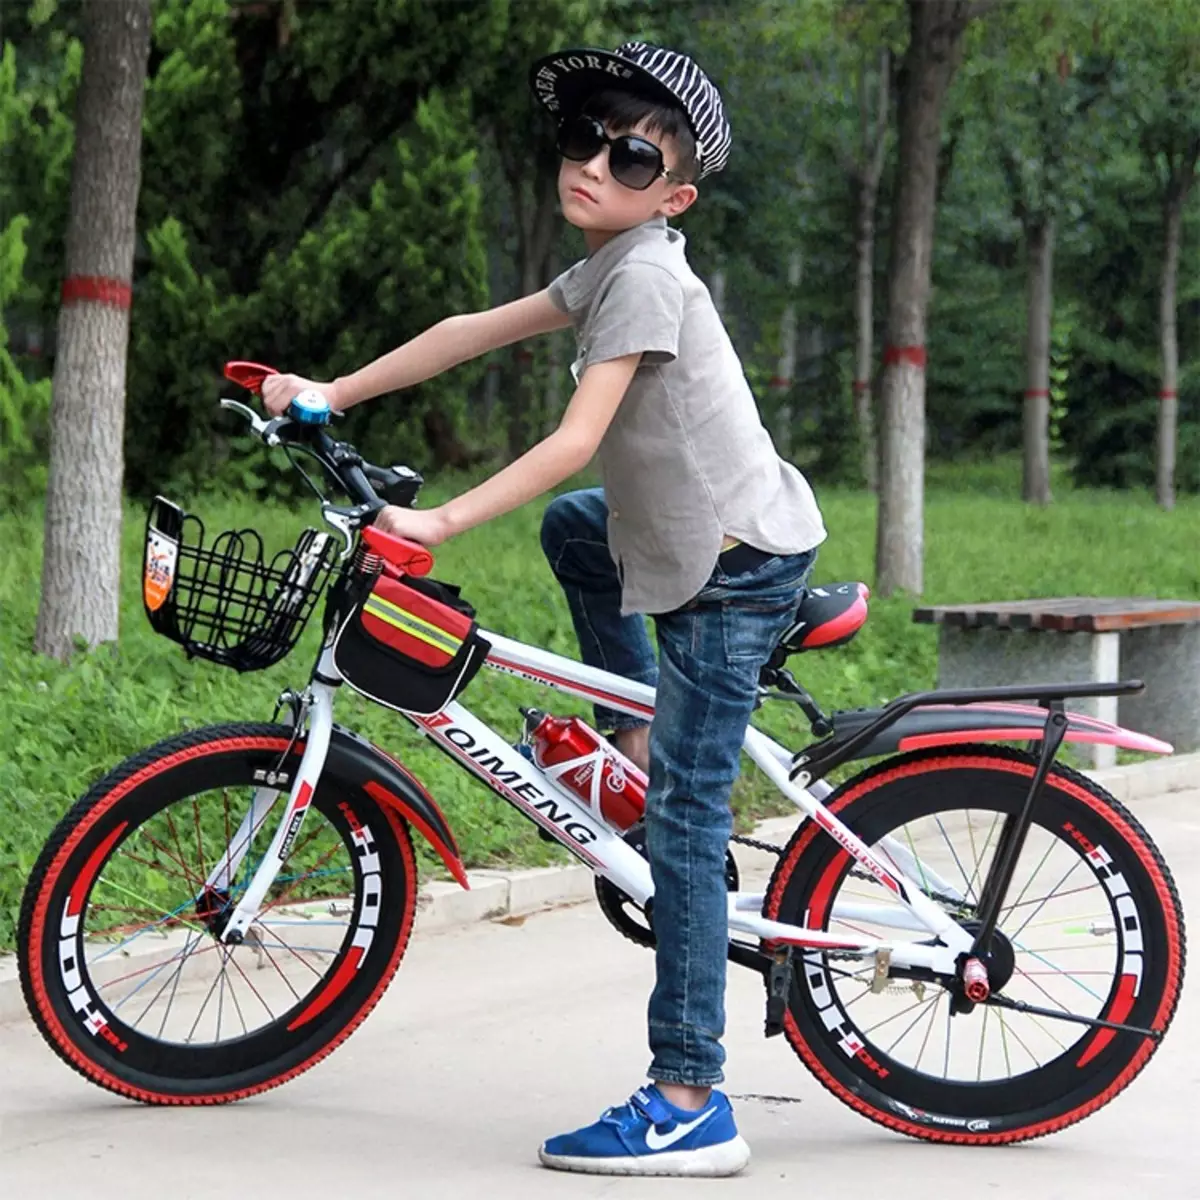 एक बच्चे के लिए बच्चों की साइकिलें 10 साल पुरानी हैं: किशोरी लड़के और लड़कियों के लिए बाइक कैसे चुनें? पहिया व्यास कैसे चुनें? रेटिंग मॉडल 8589_16